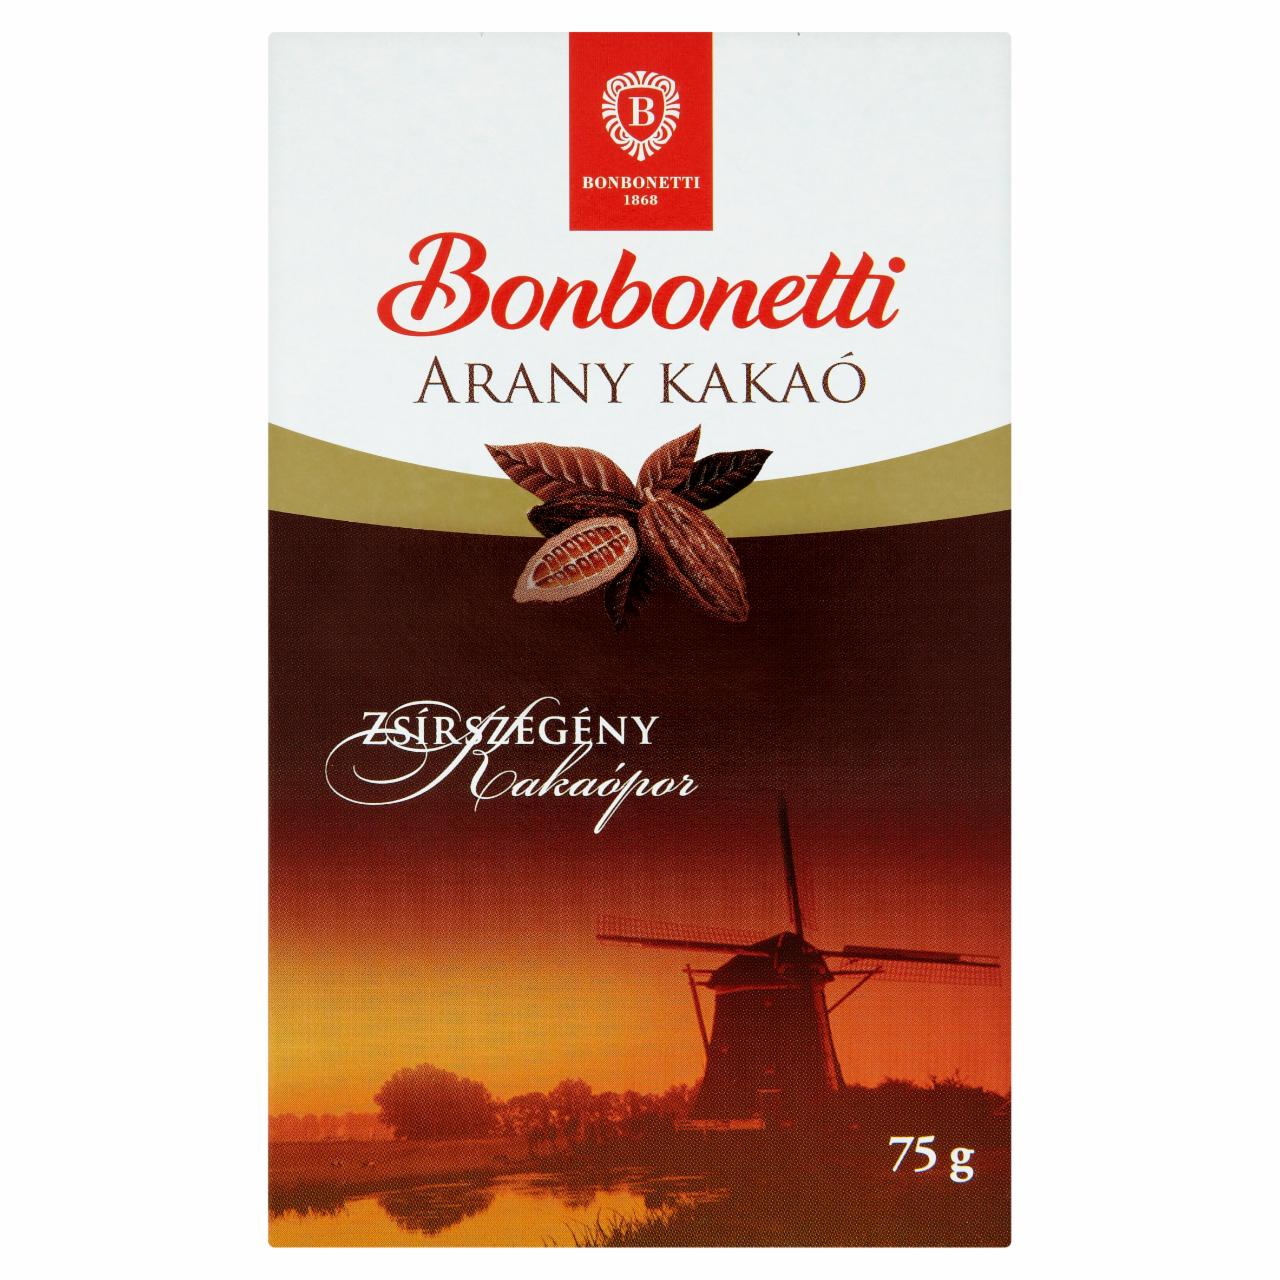 Képek - Bonbonetti Arany Kakaó zsírszegény kakaópor 75 g